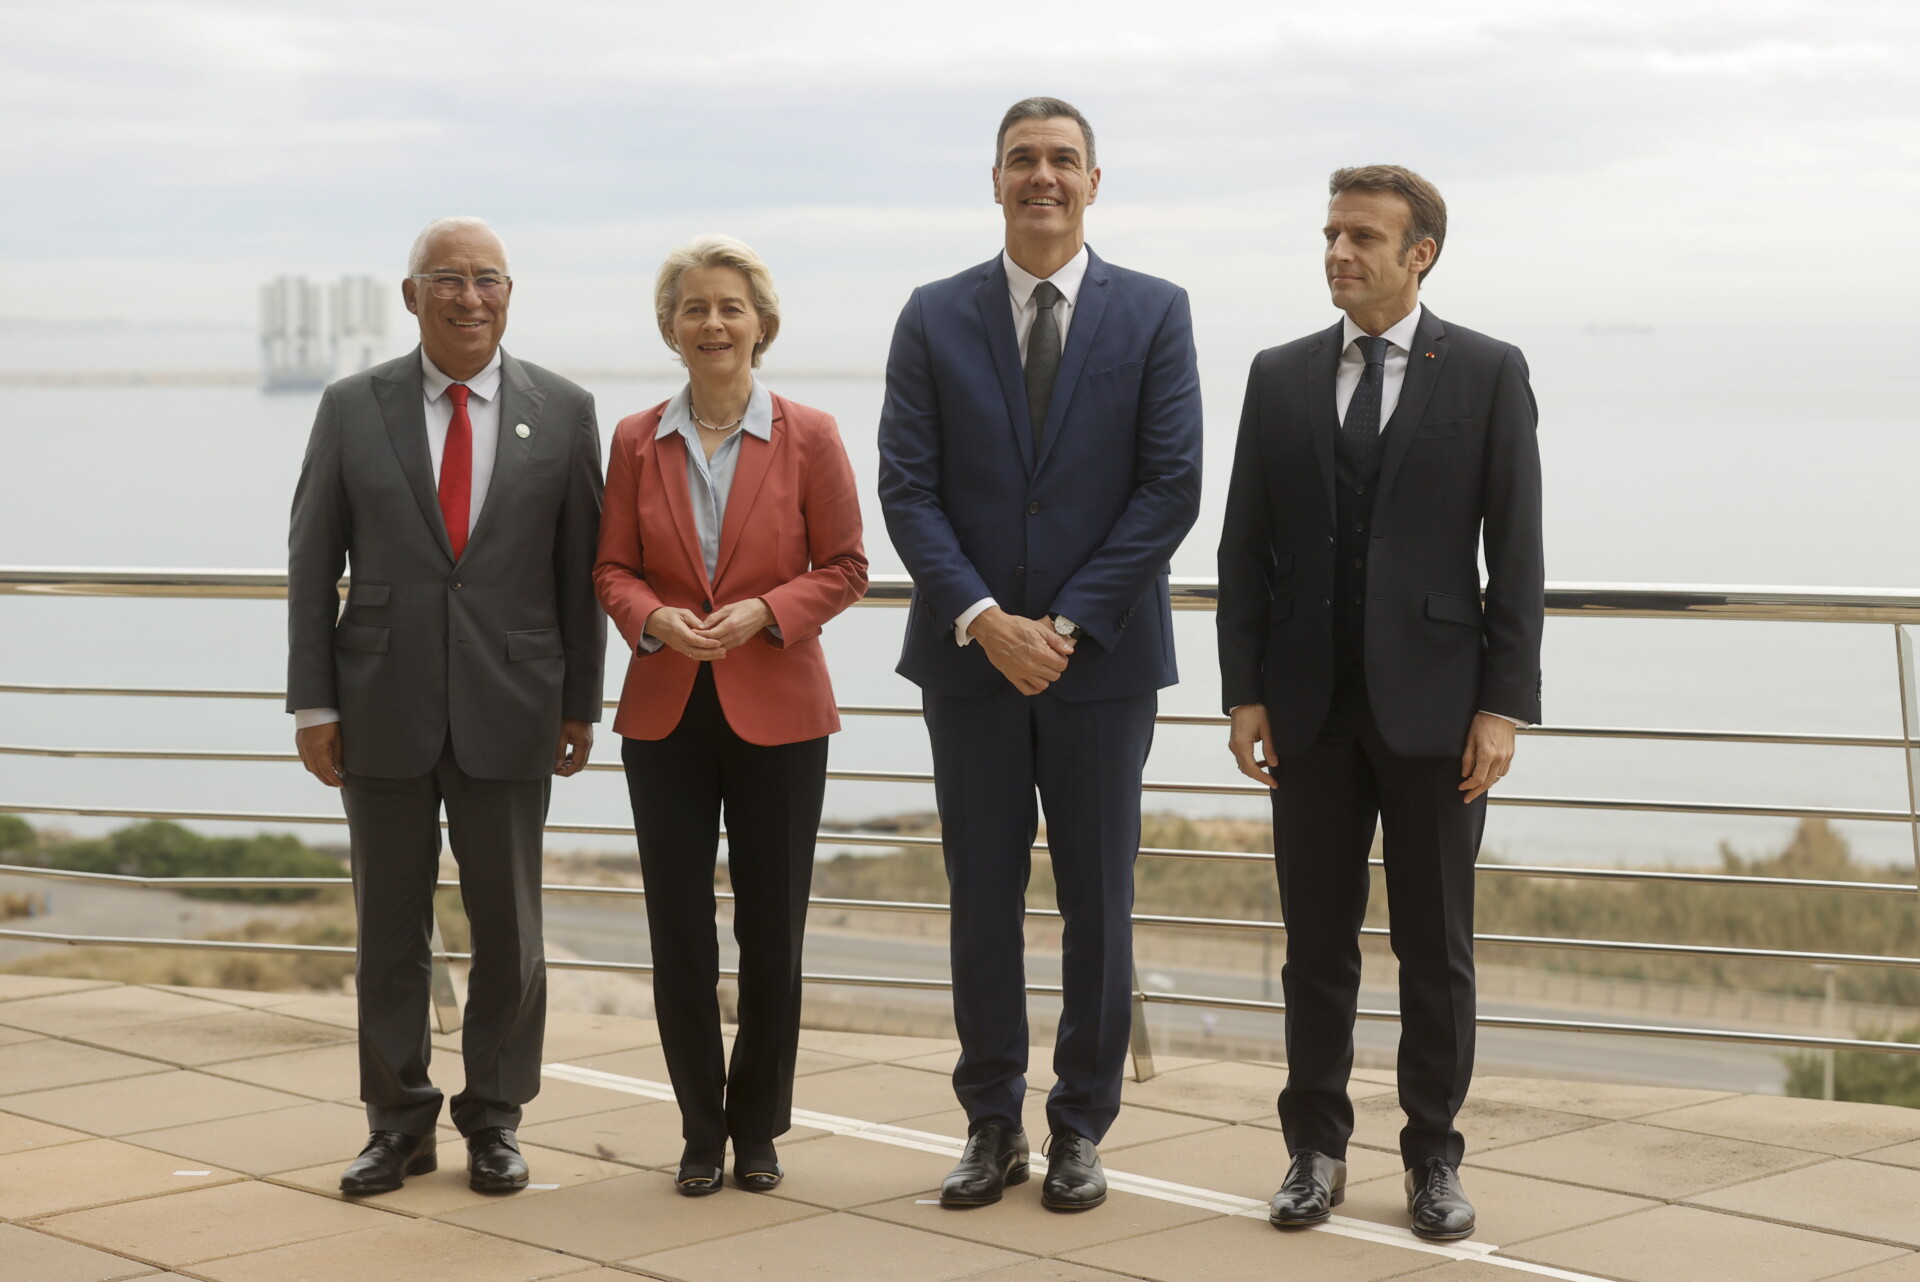 Οι ηγέτες Γαλλίας, Ισπανίας και Πορτογαλίας με την πρόεδρο της Κομισιόν © EPA/KAI FORSTERLING